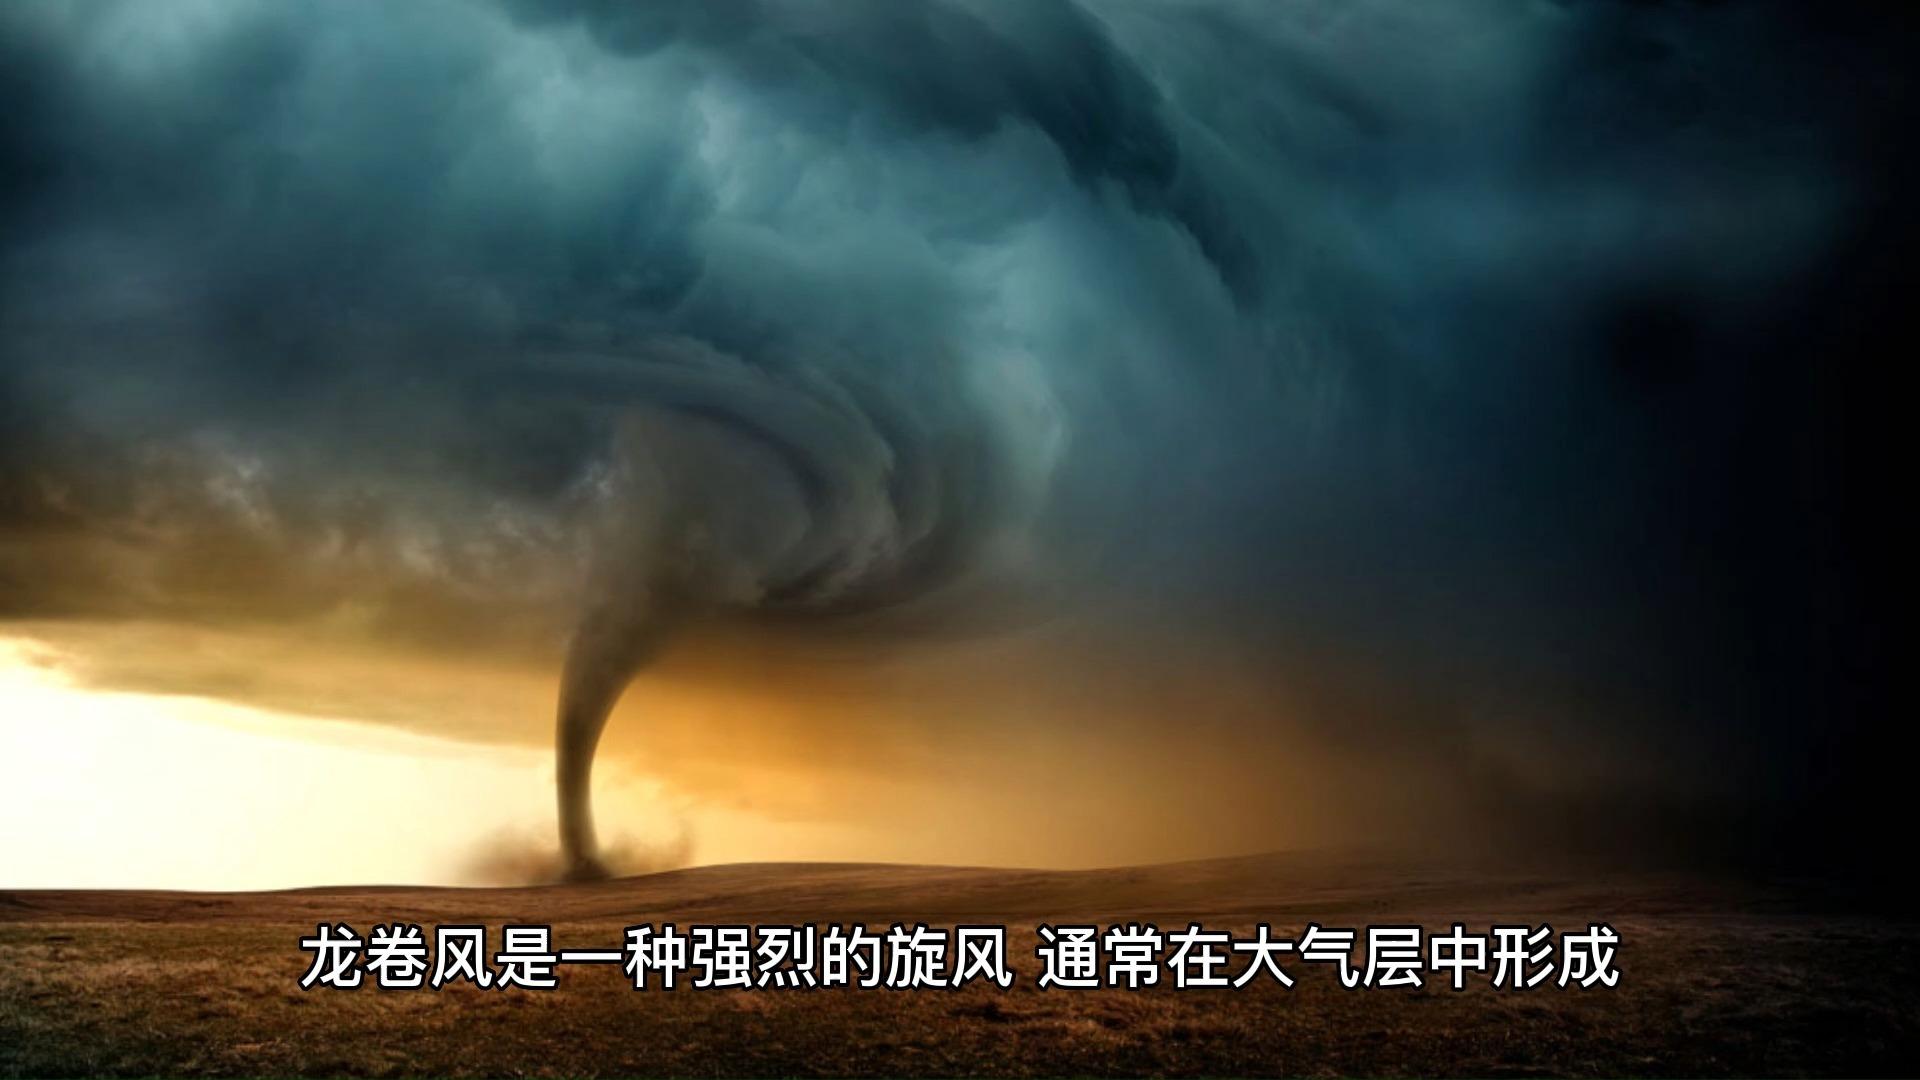 广州从化区太平镇出现“龙卷风”，暂无发现人员伤亡